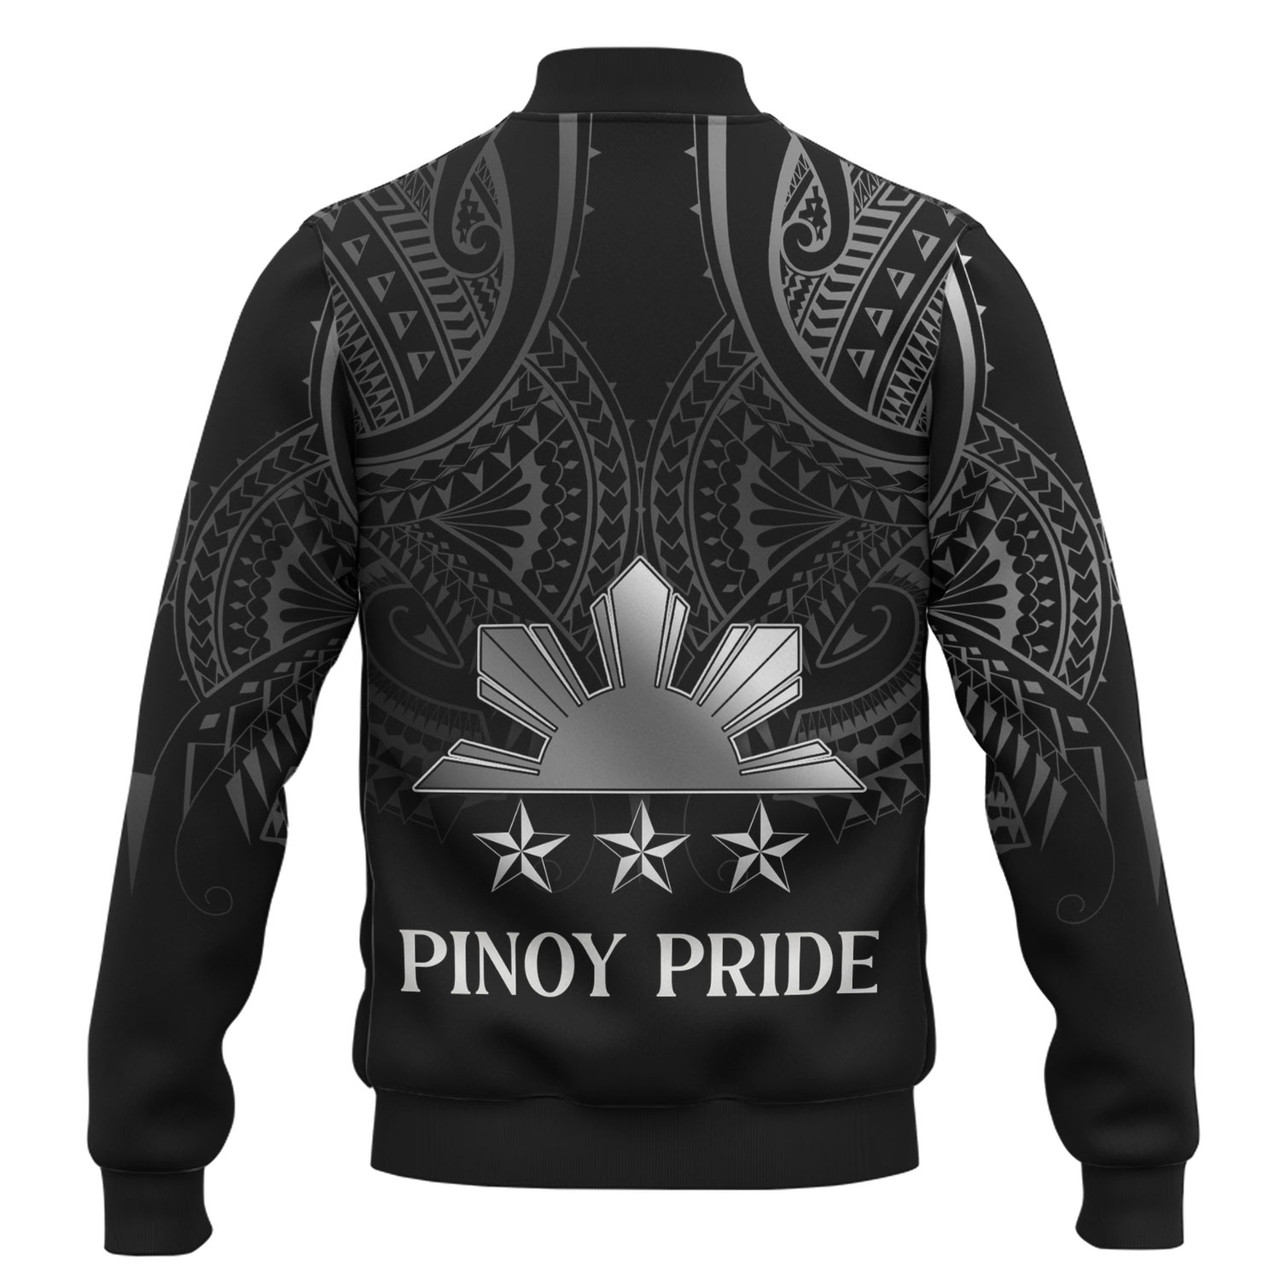 Philippines Filipinos Custom Personalised Baseball Jacket Black Sun And Stars Tribal Tatau Design